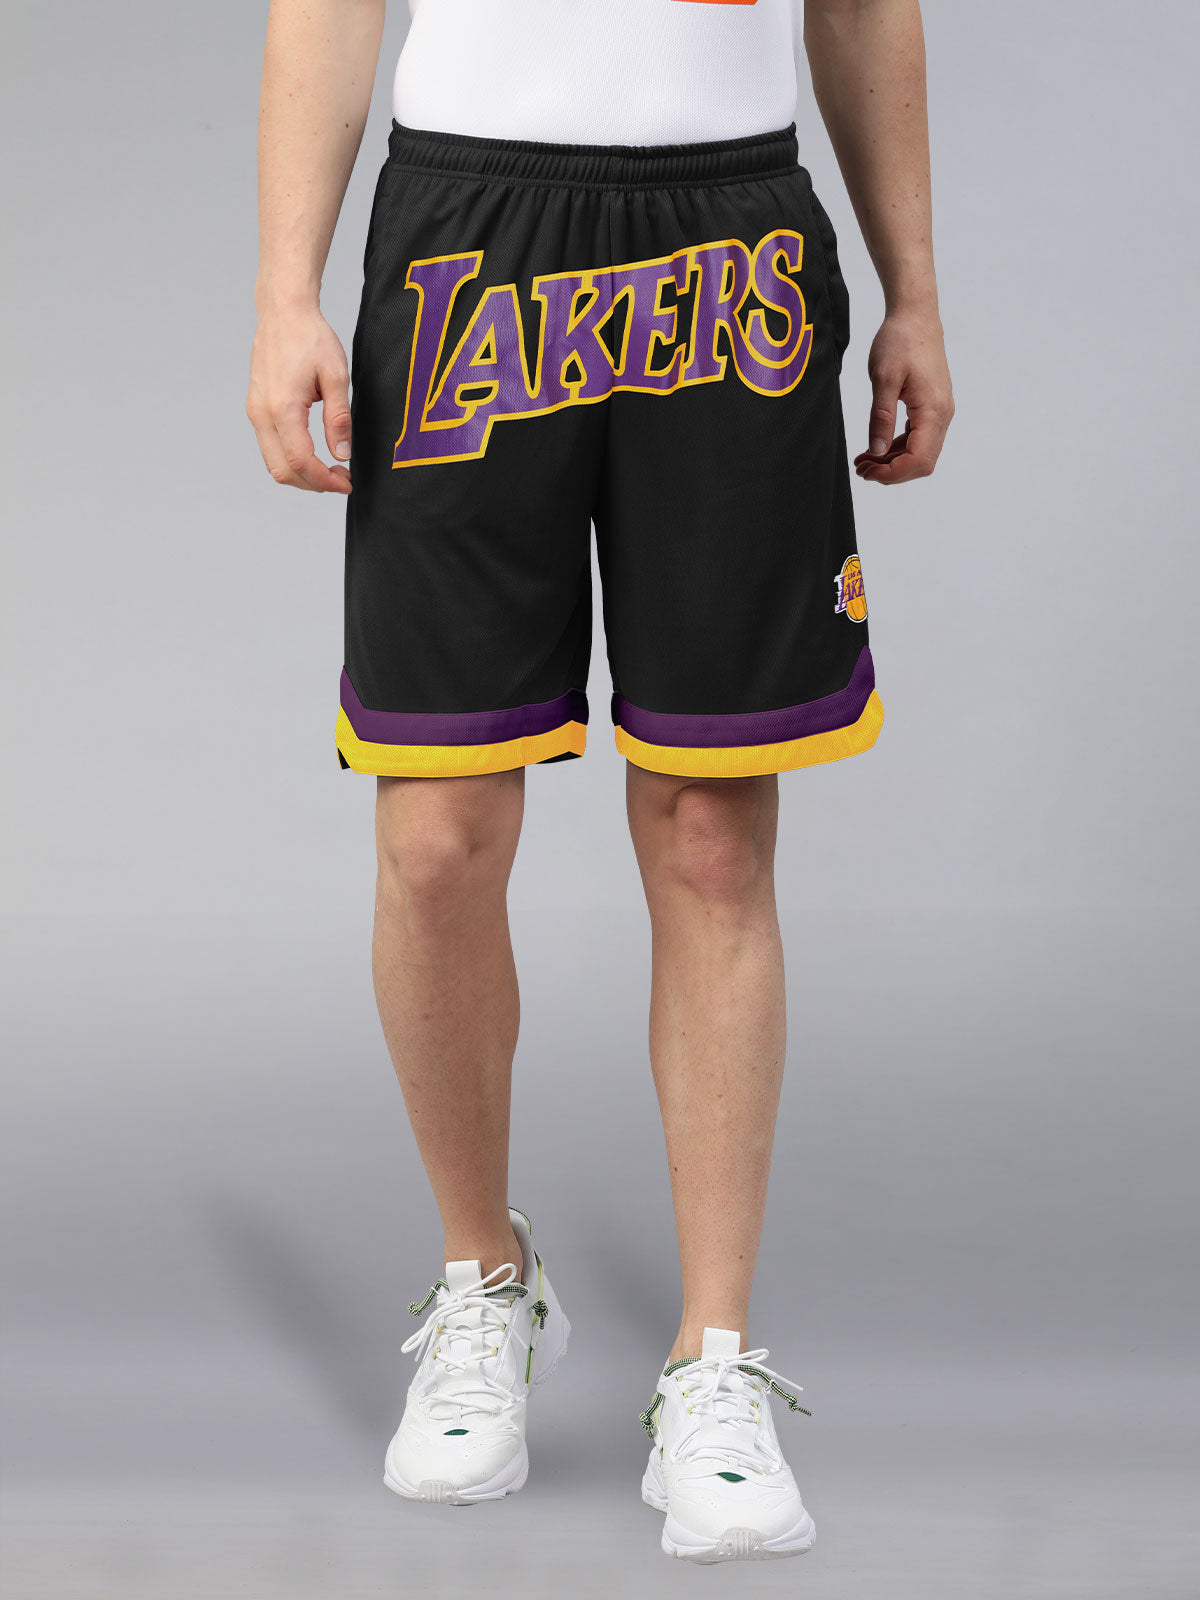 Bape, Shorts, Brand New Bape Lakers Shorts W Tags